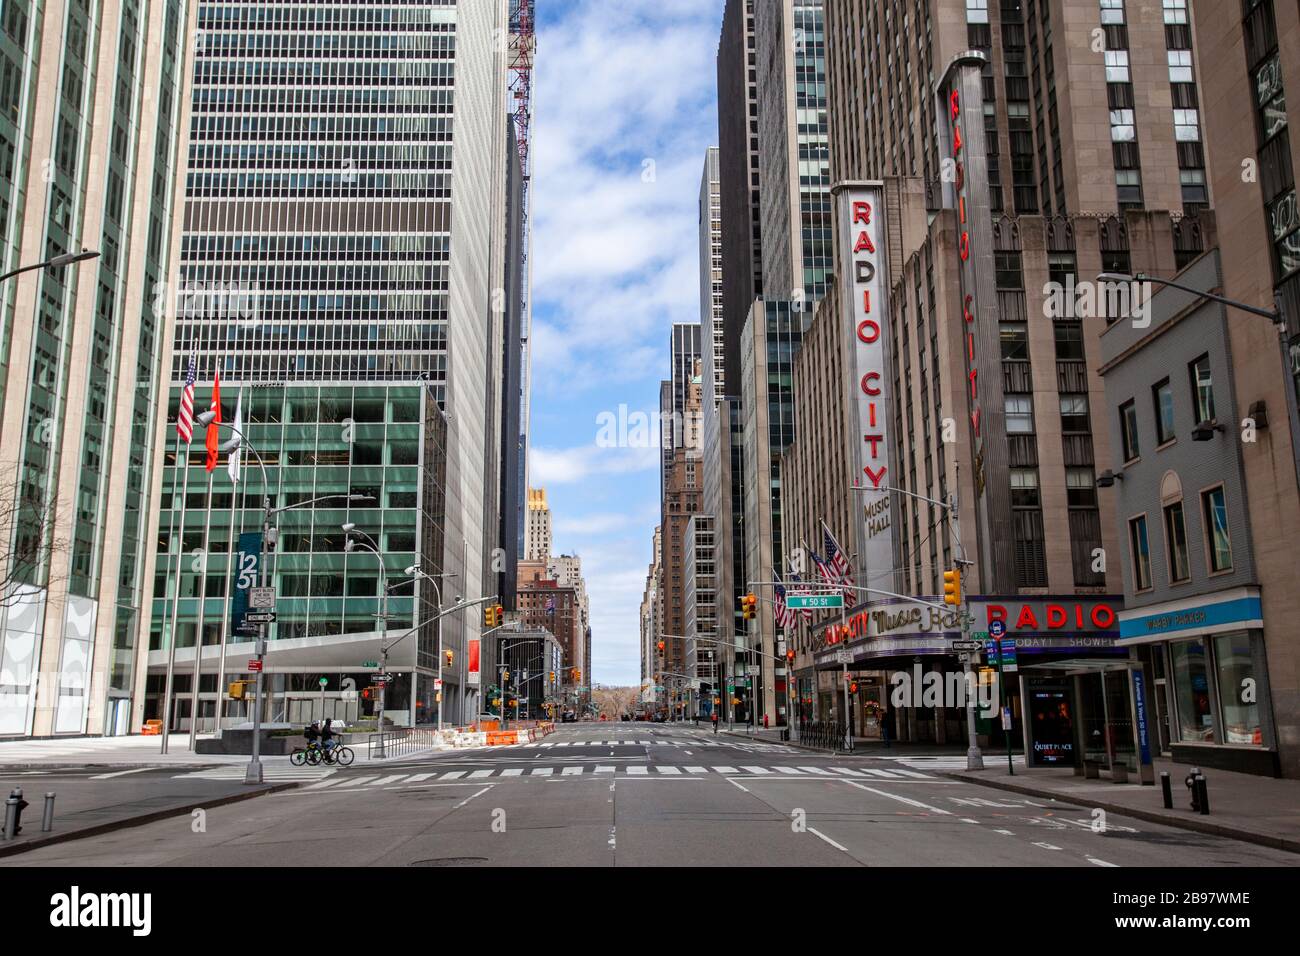 Peu d'automobiles voyagent dans les rues vides de New York en raison de COVID-19, Coronavirus. Banque D'Images